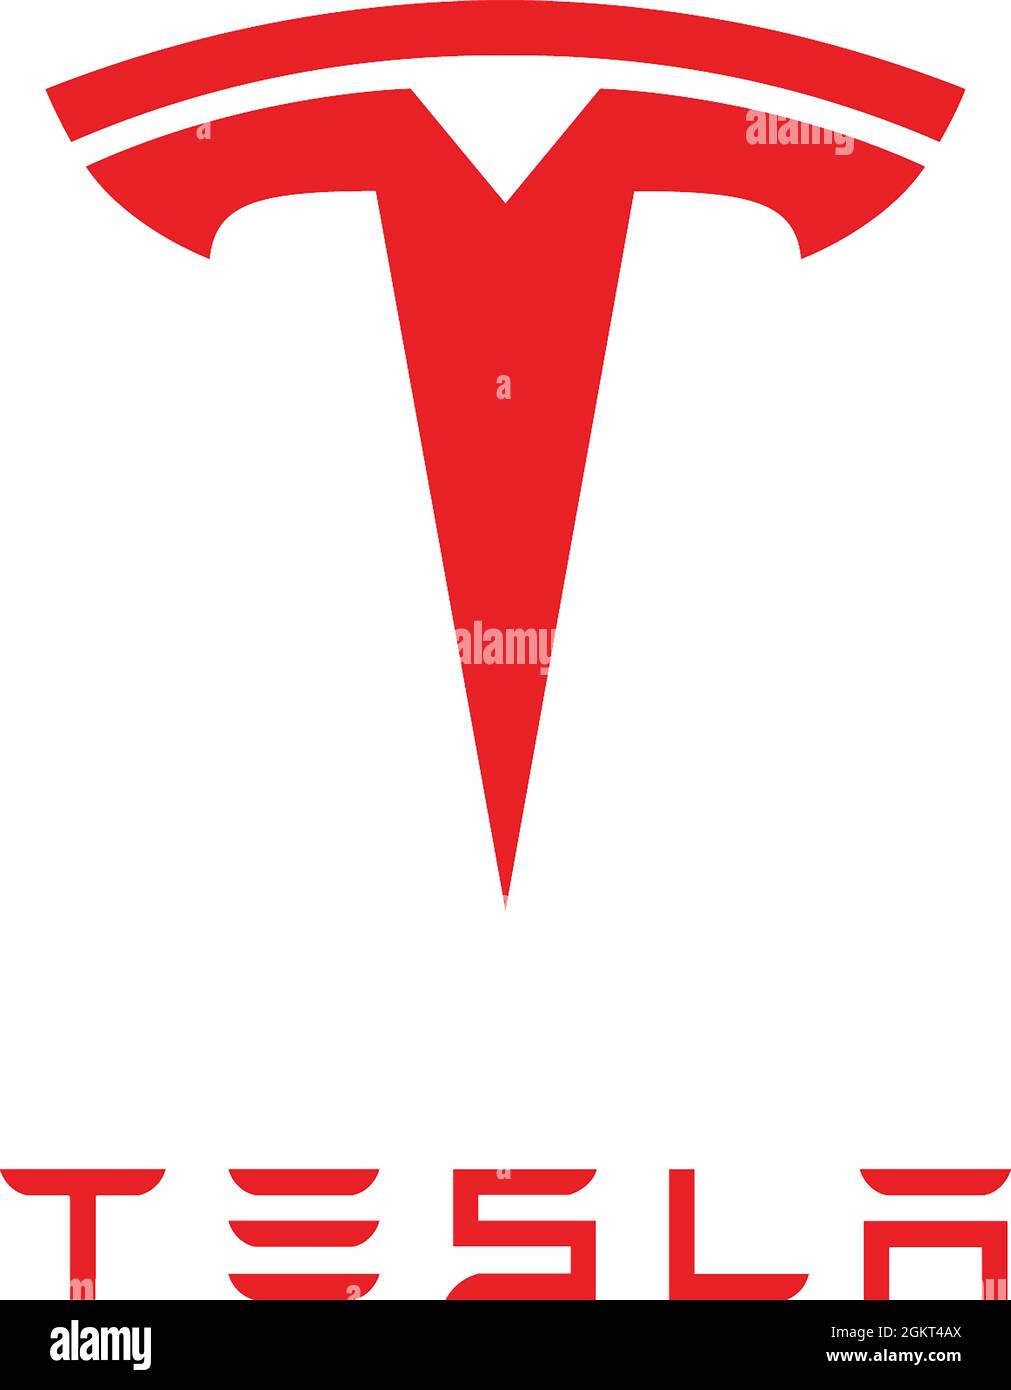 Logo aziendale della società americana di veicoli elettrici e energia pulita Tesla con sede in California Paolo Alto - Stati Uniti. Foto Stock